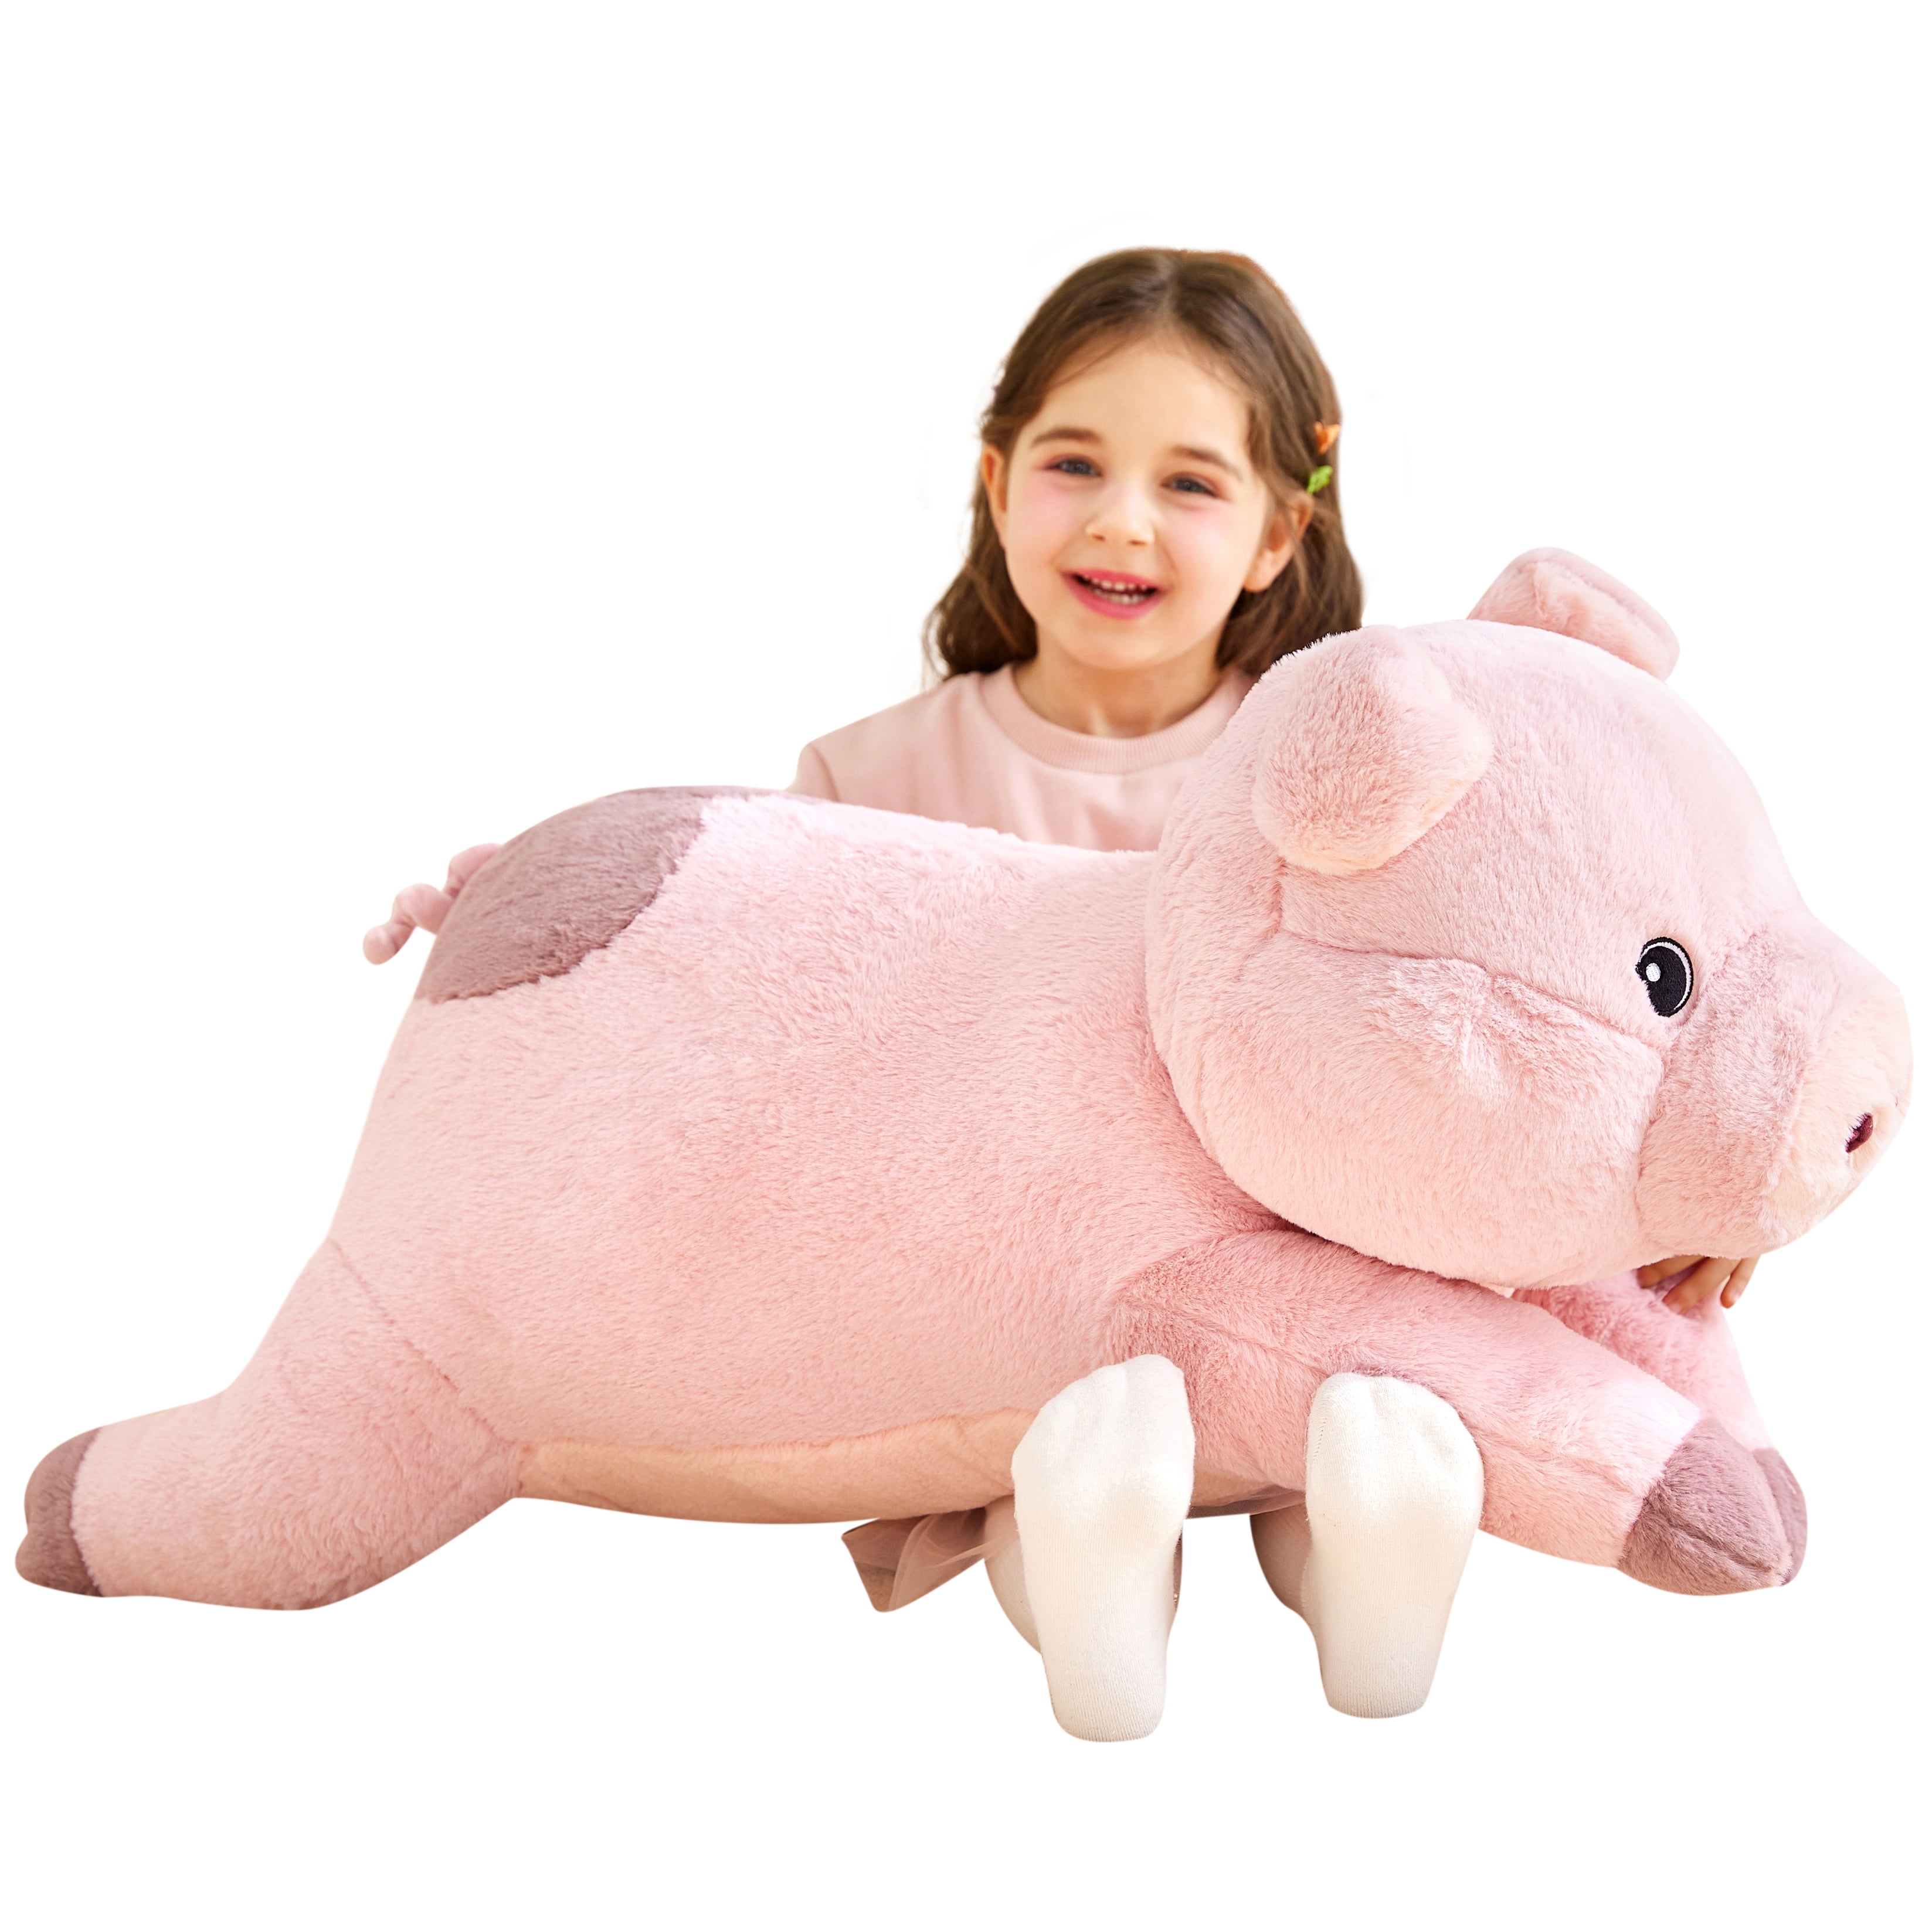 IKASA Giant Pig Stuffed Animal Plush Toy,Large Jumbo 30